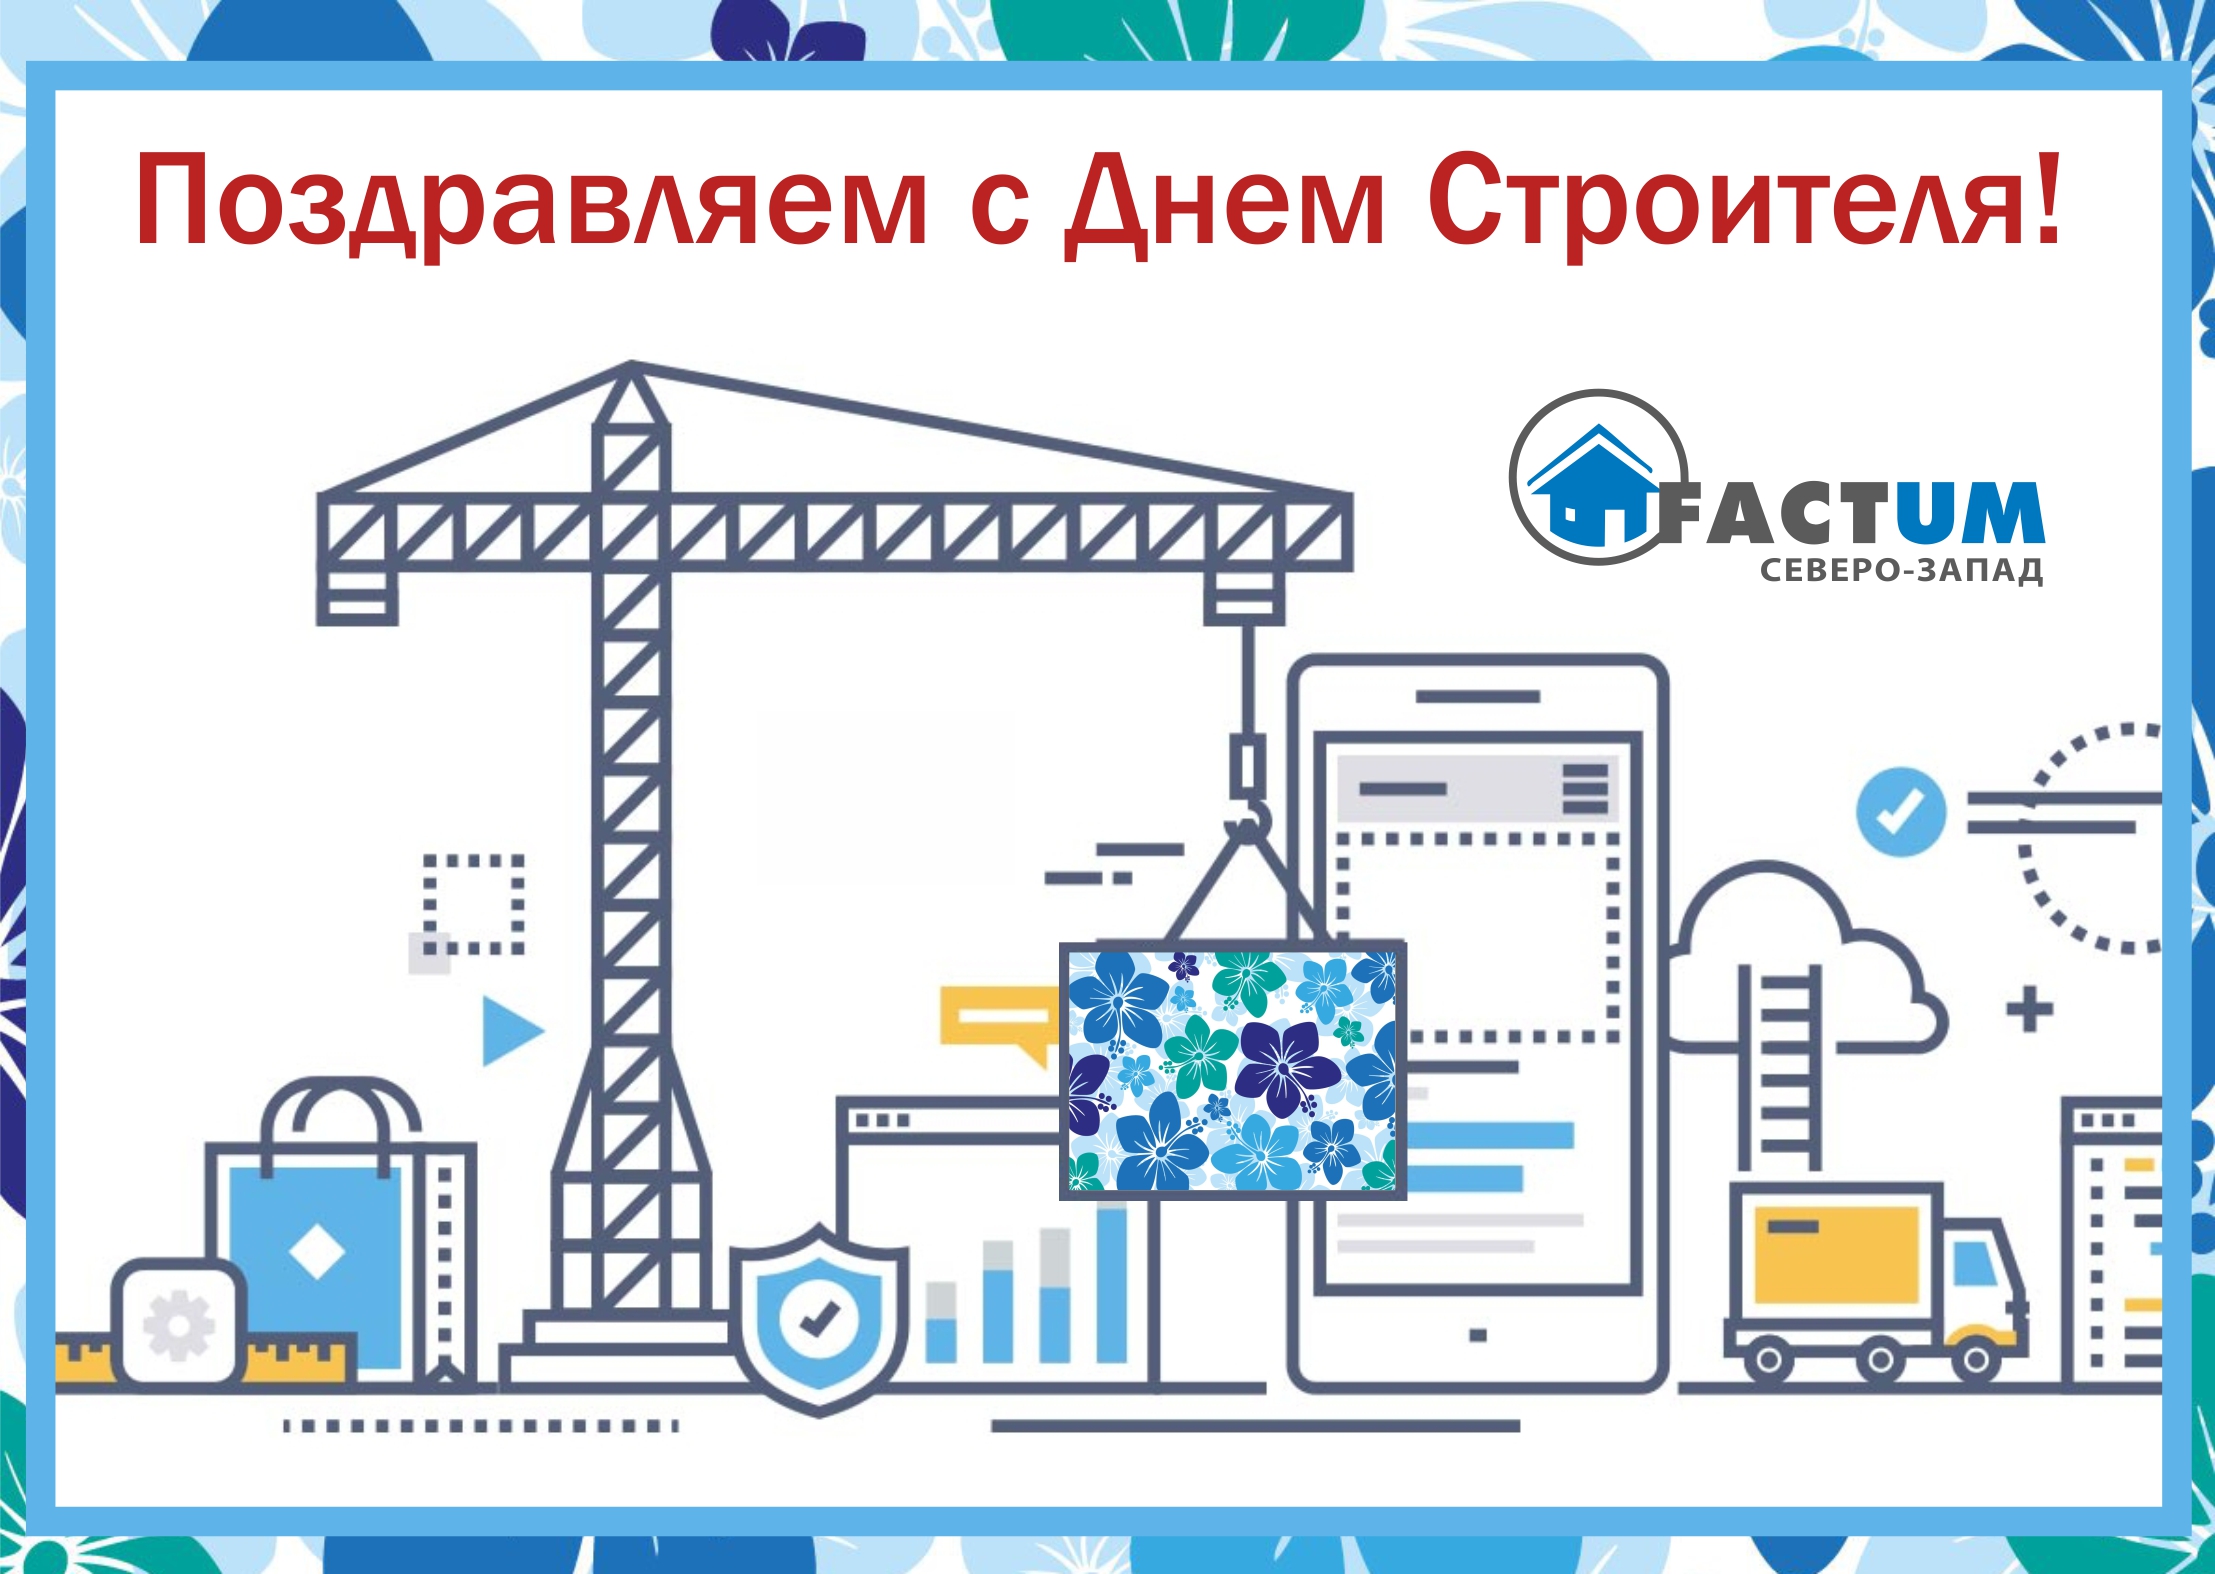 2 Компания «Фактум Северо-Запад», Санкт-Петербург | Foamglas